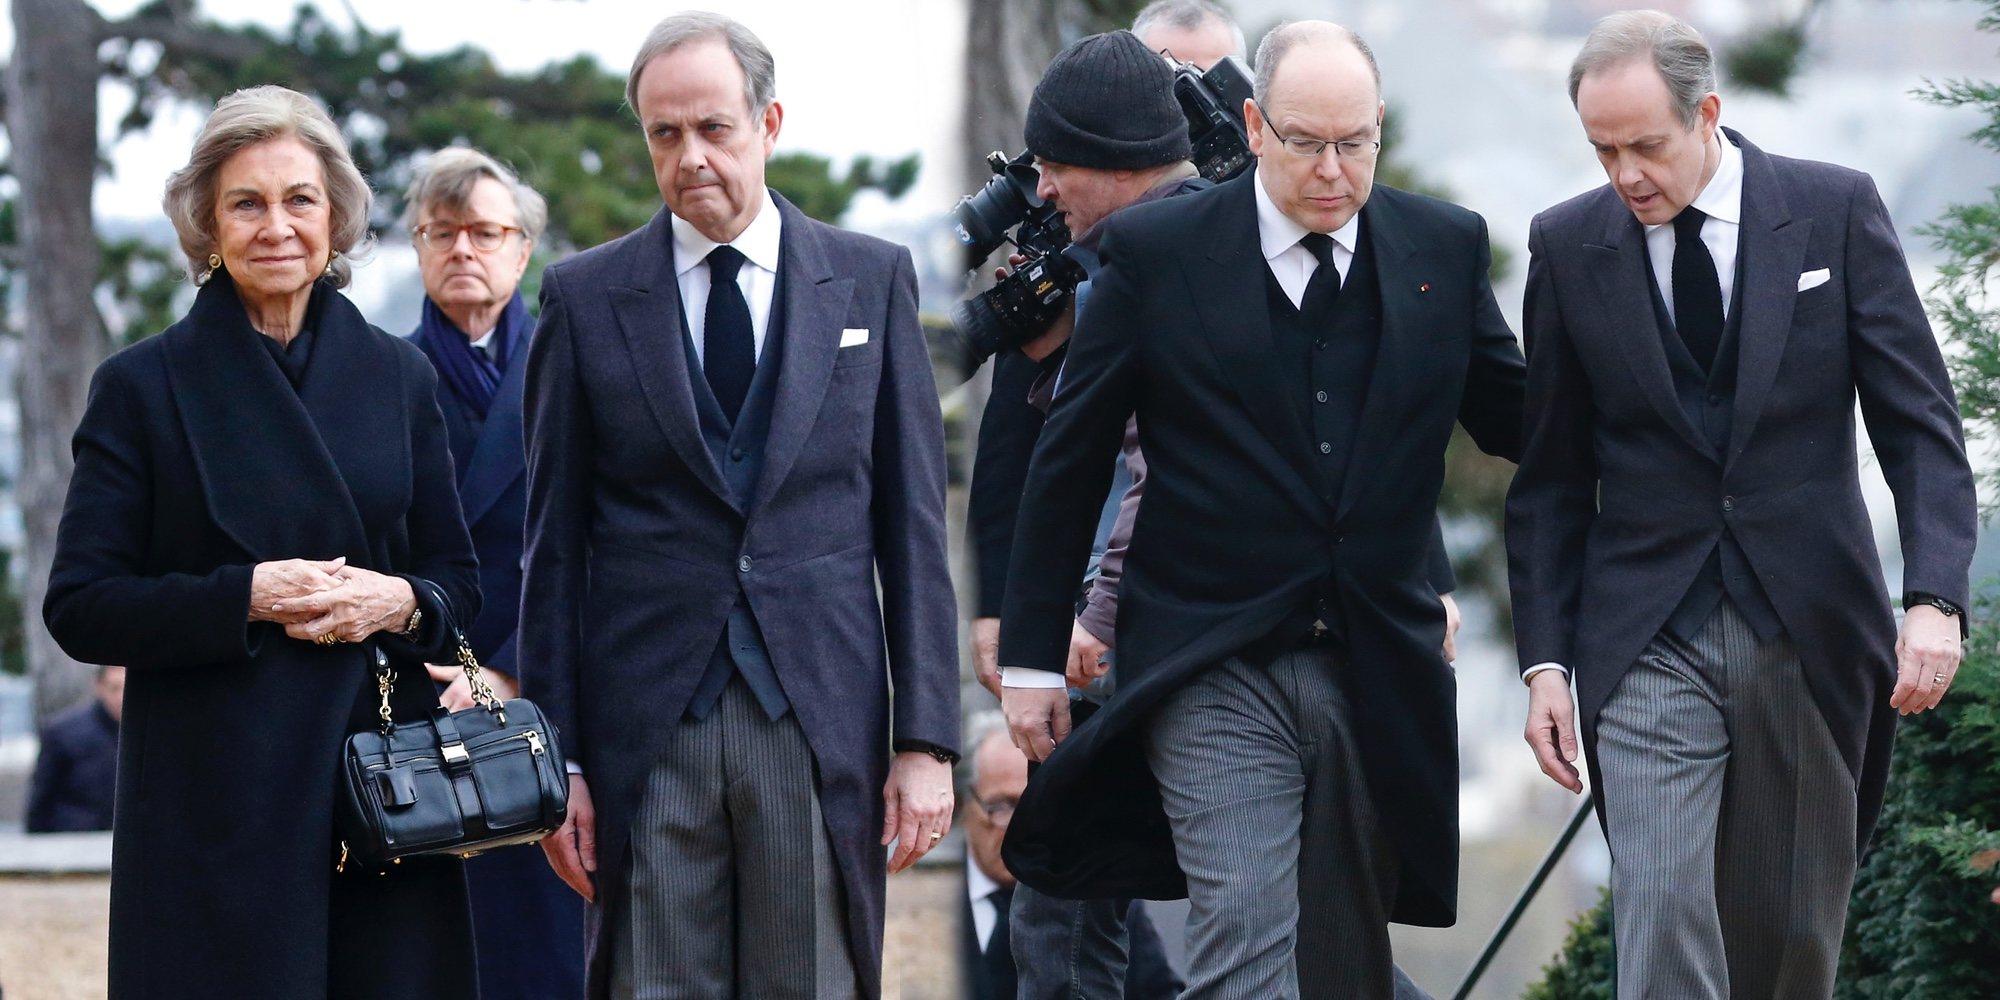 Cónclave de royals en el funeral del Conde de París: de la Reina Sofía a Alberto de Mónaco